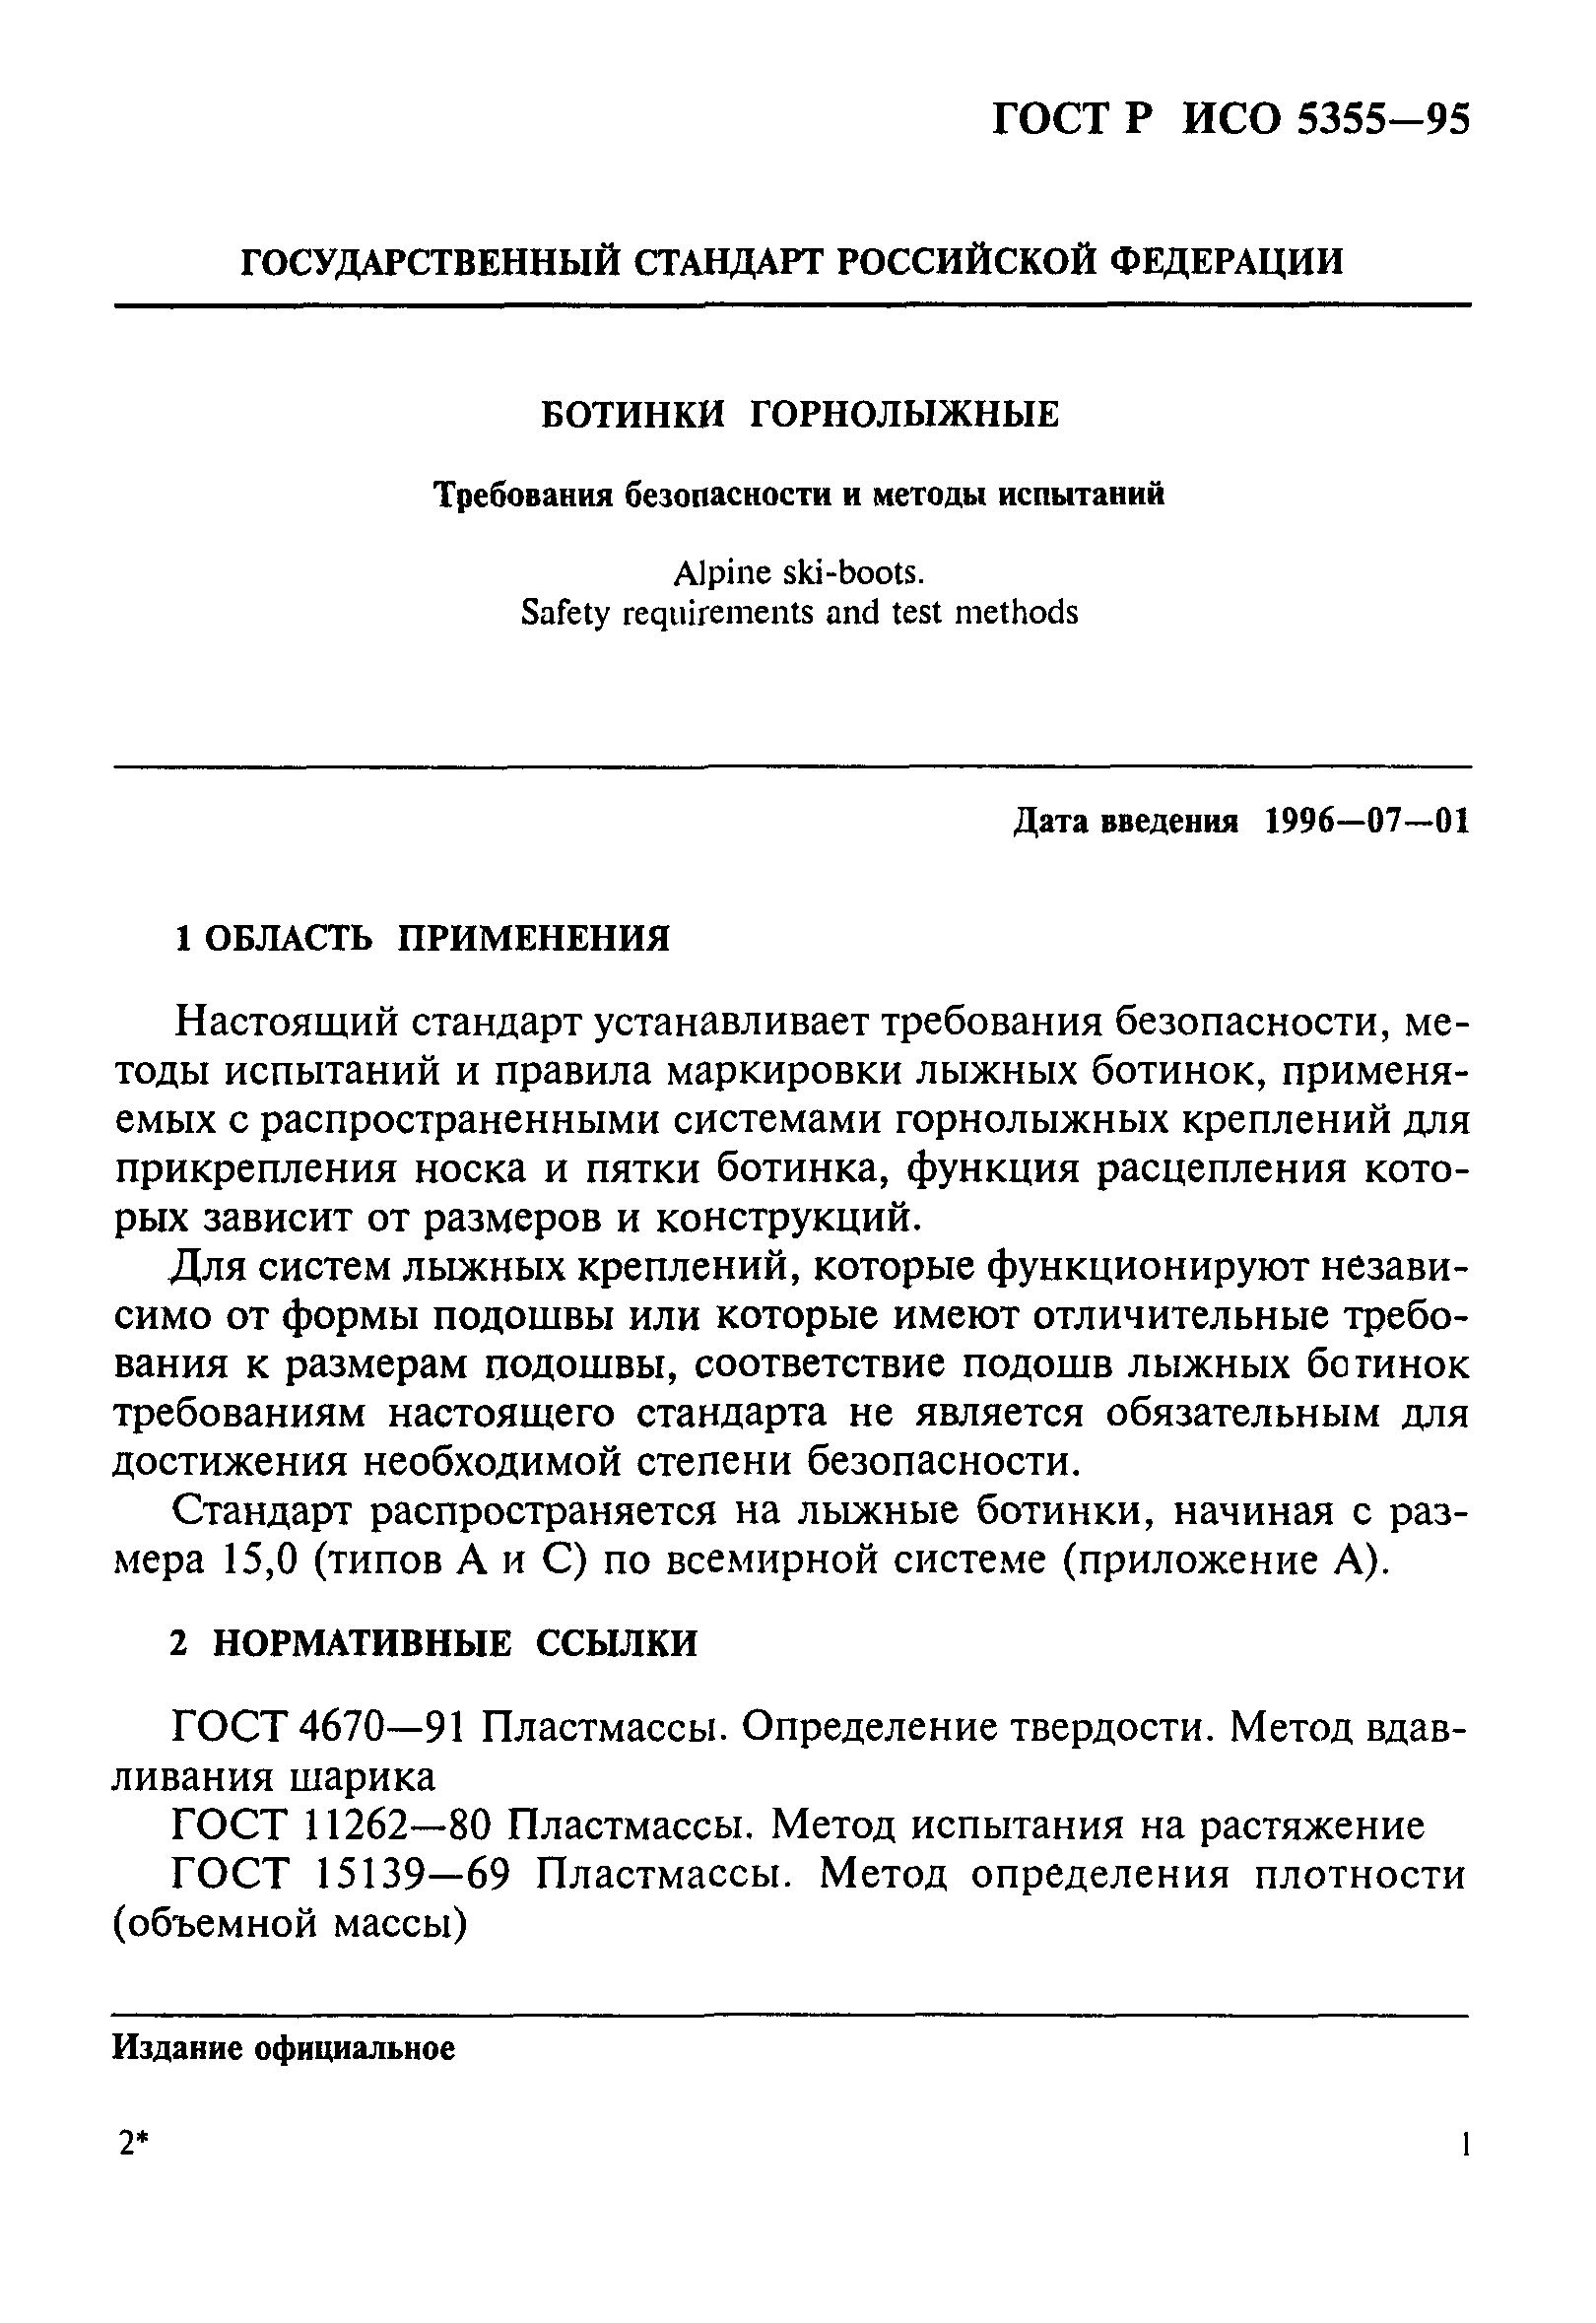 ГОСТ Р ИСО 5355-96